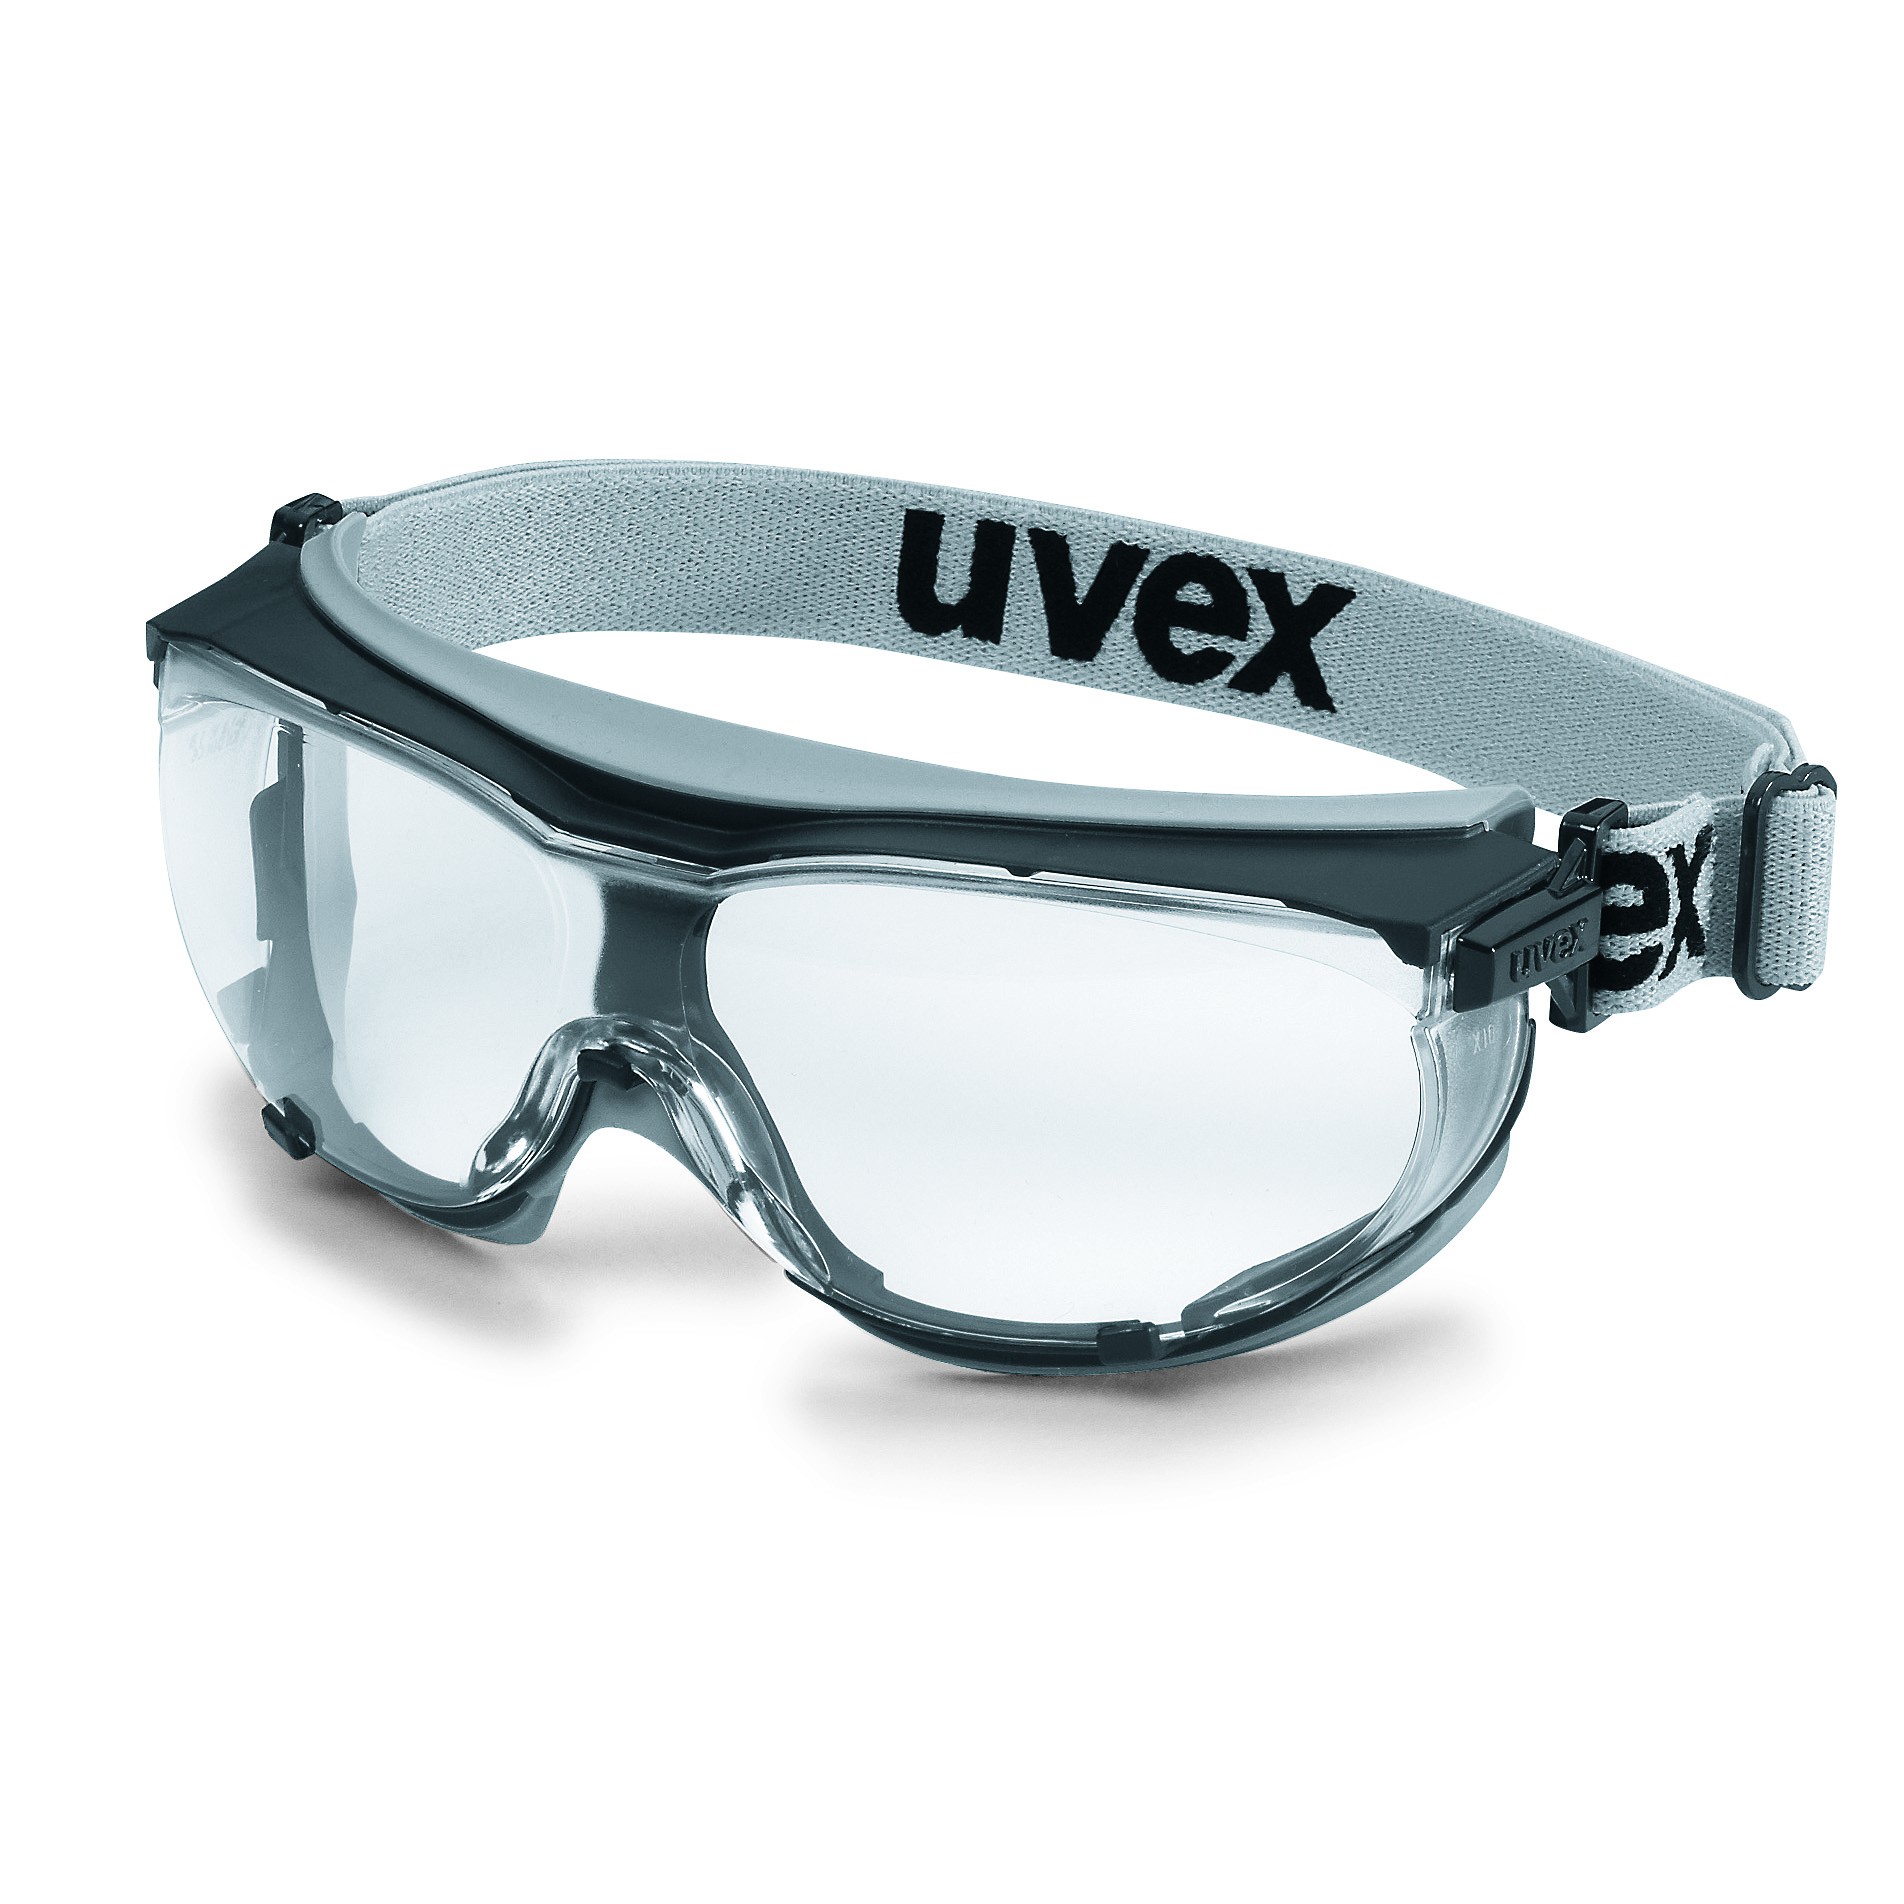 Vollsichtbrille Uvex carbonvision grau/schwarz